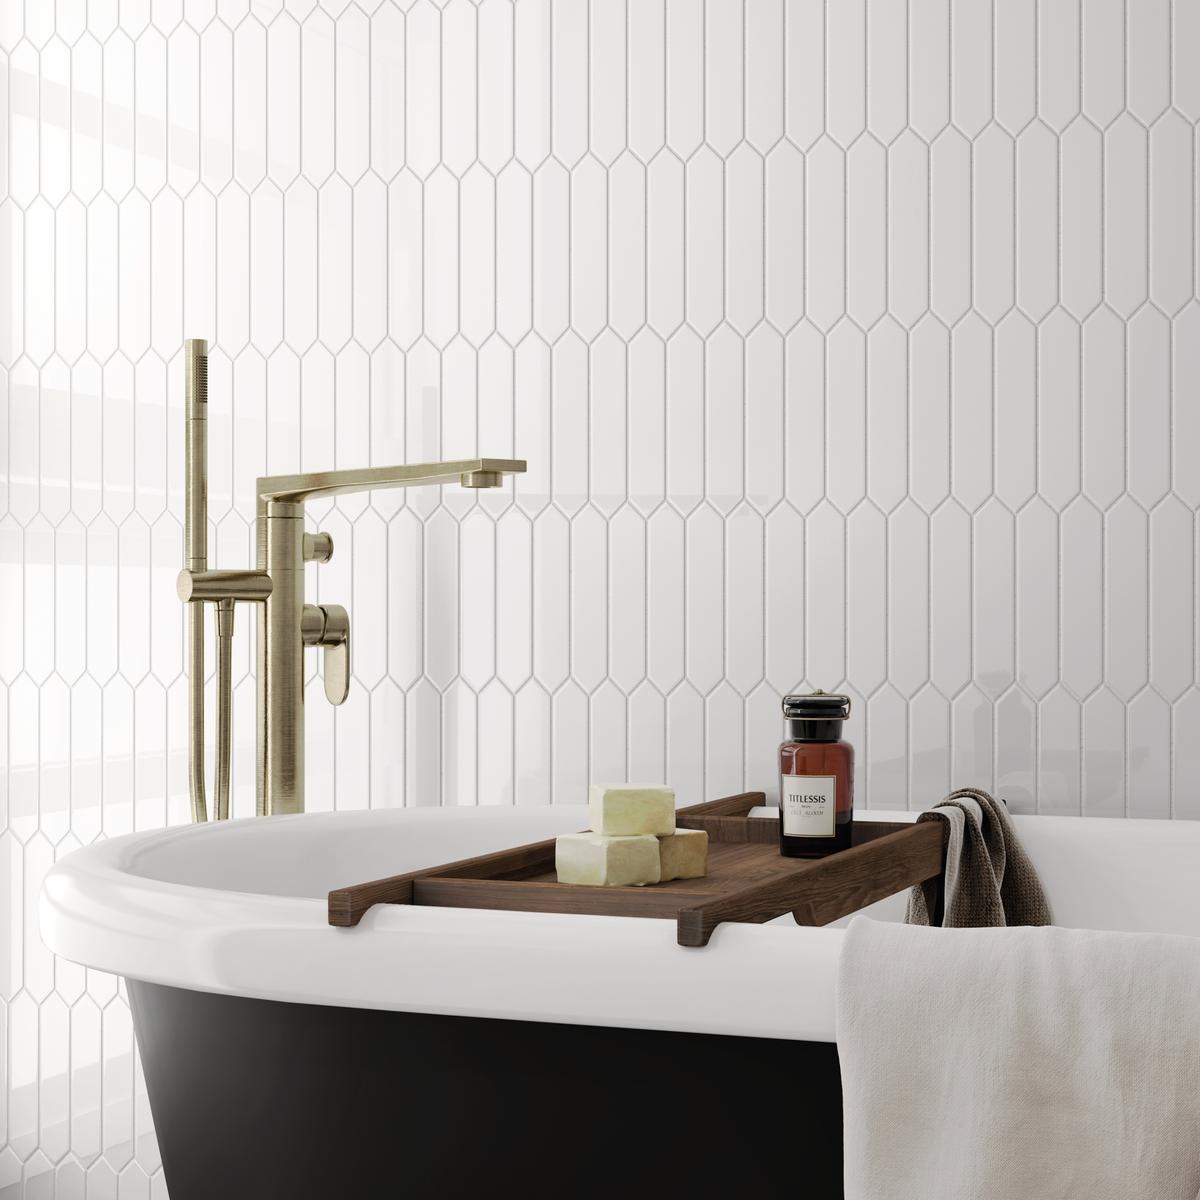 Carrelage uni blanc dans une salle de bain épurée avec baignoire noire et blanche, accents dorés, serviettes et accessoires relaxants